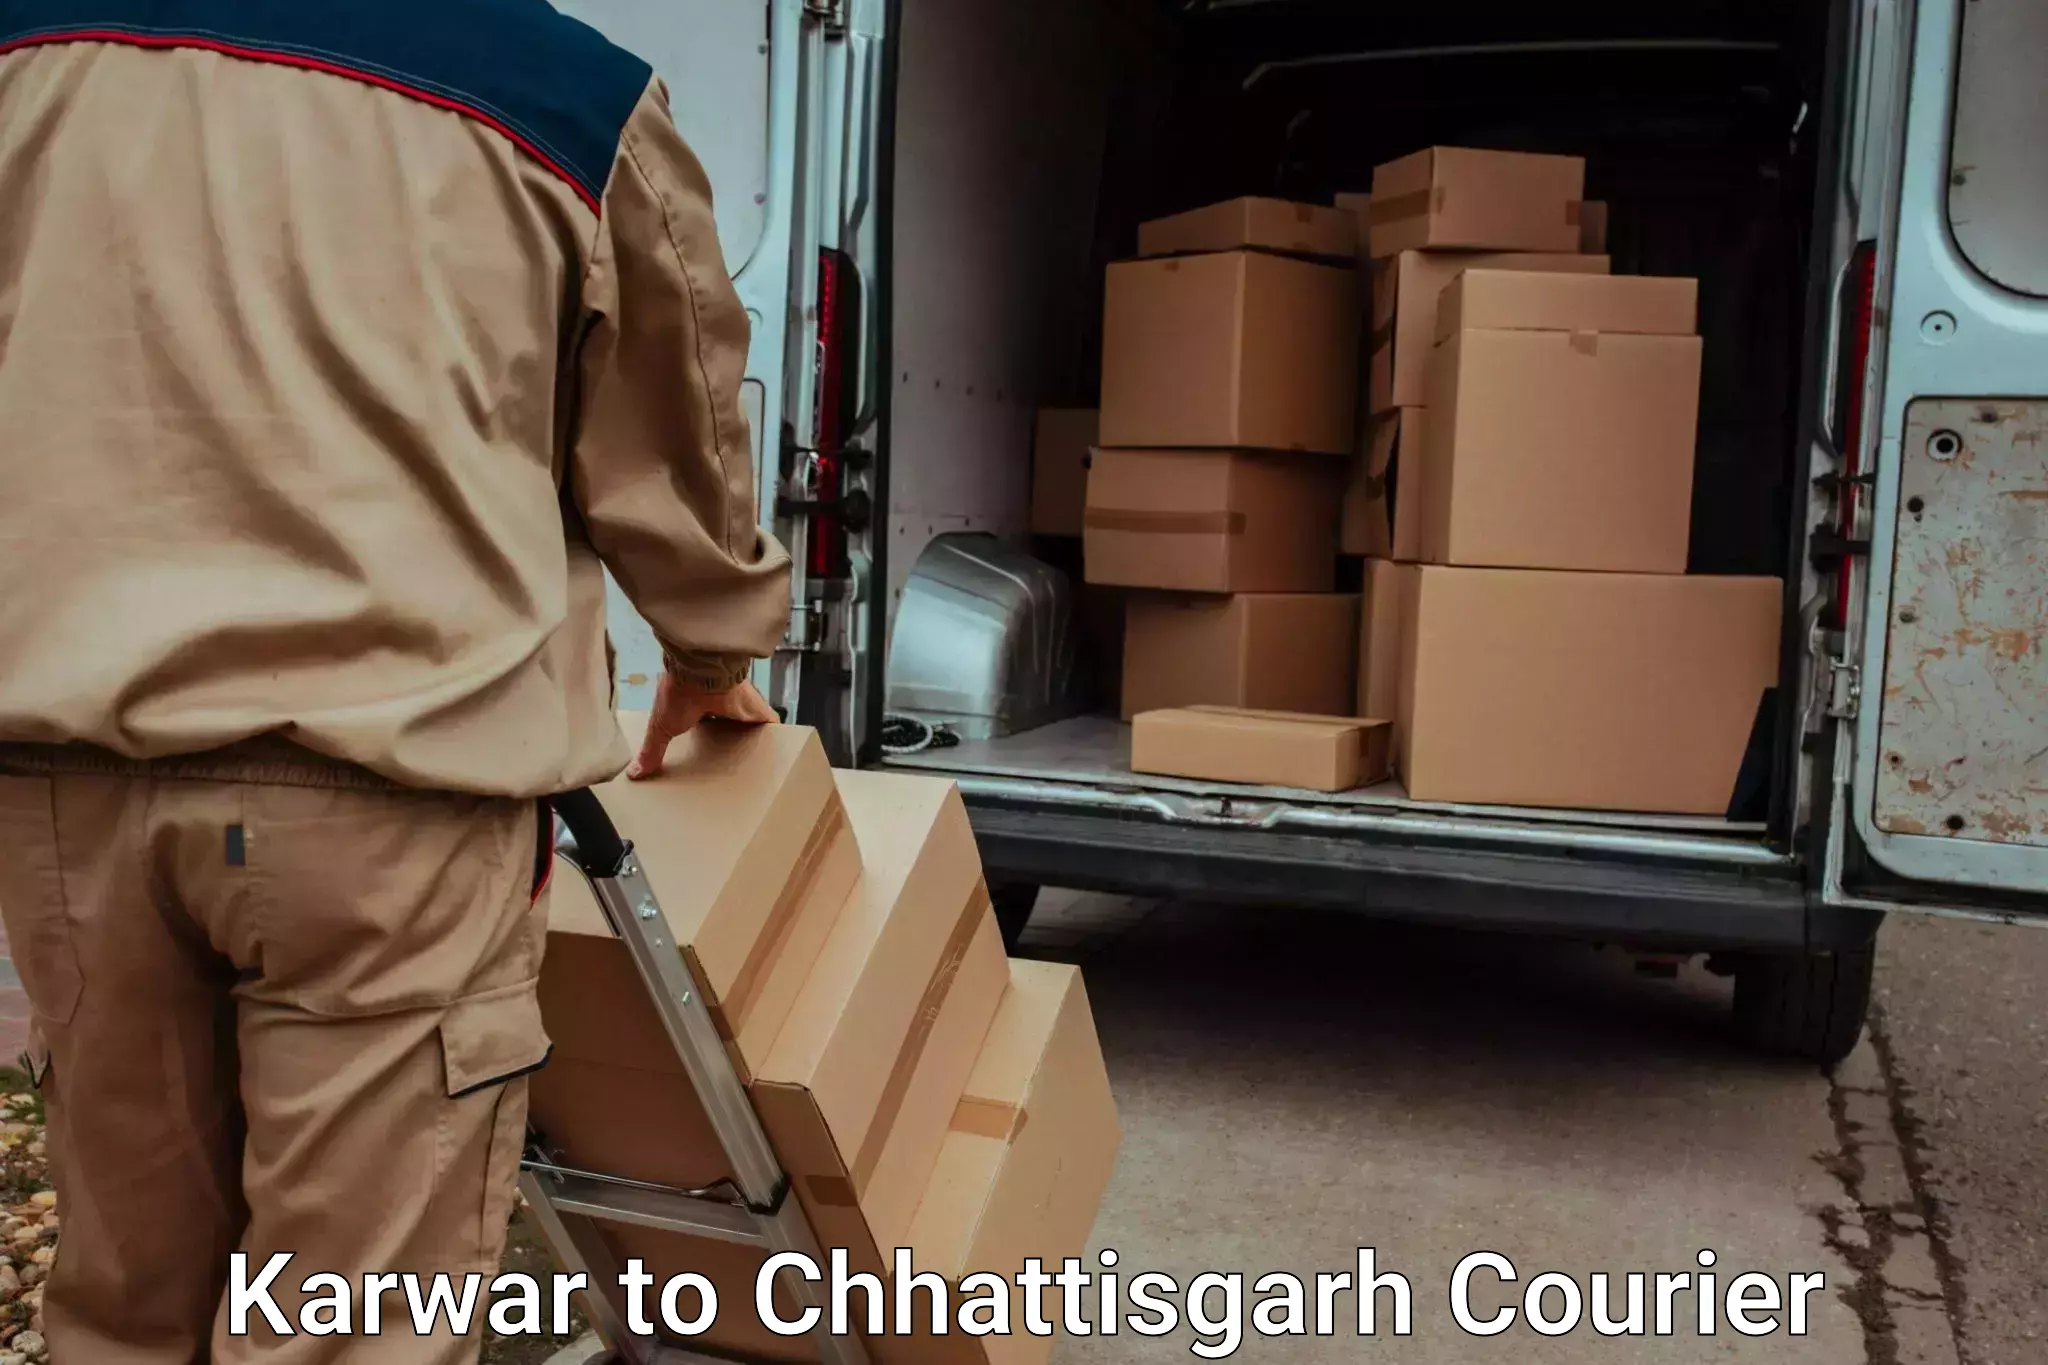 Moving and packing experts Karwar to Mandhar